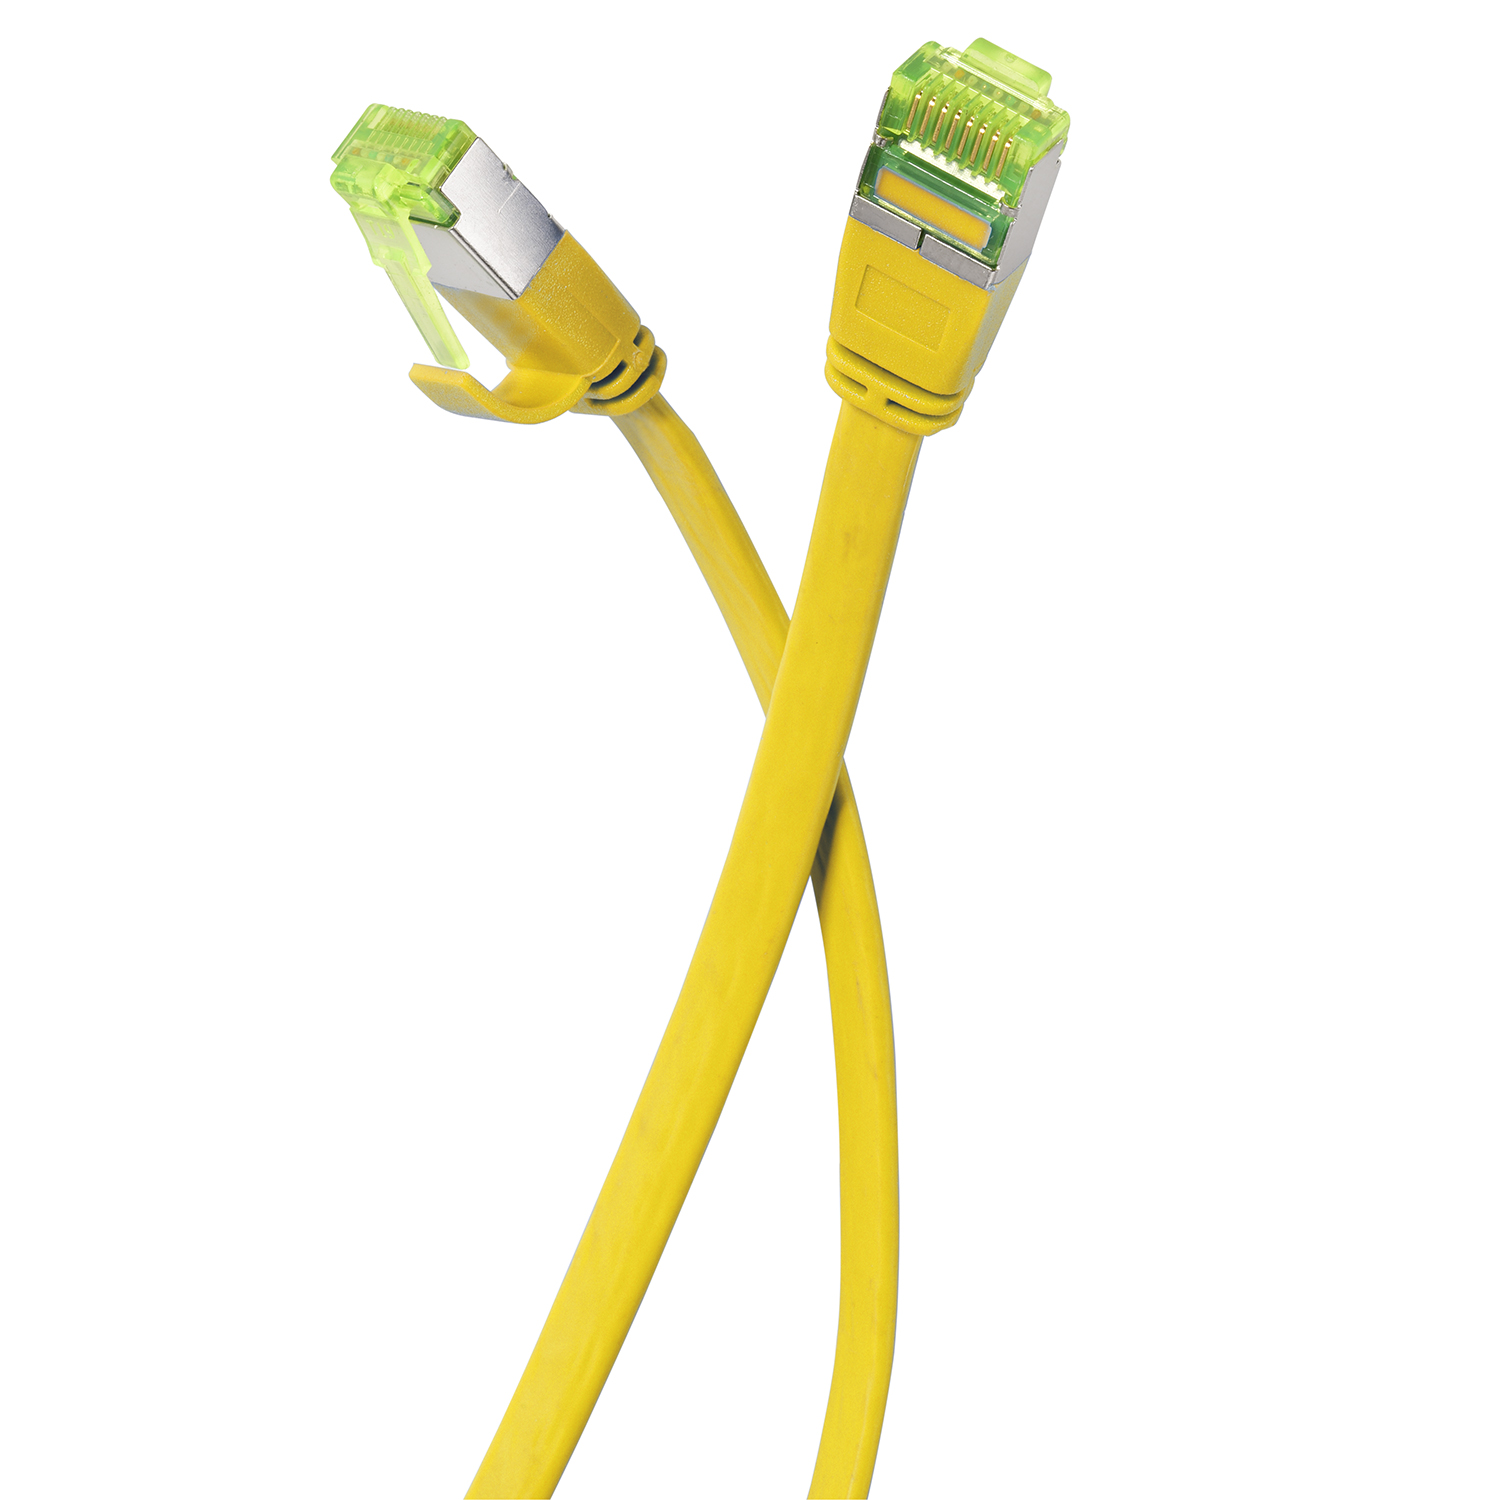 TPFNET 7,5m Patchkabel / Flachkabel gelb, U/FTP Netzwerkkabel, GBit, m 7,5 10